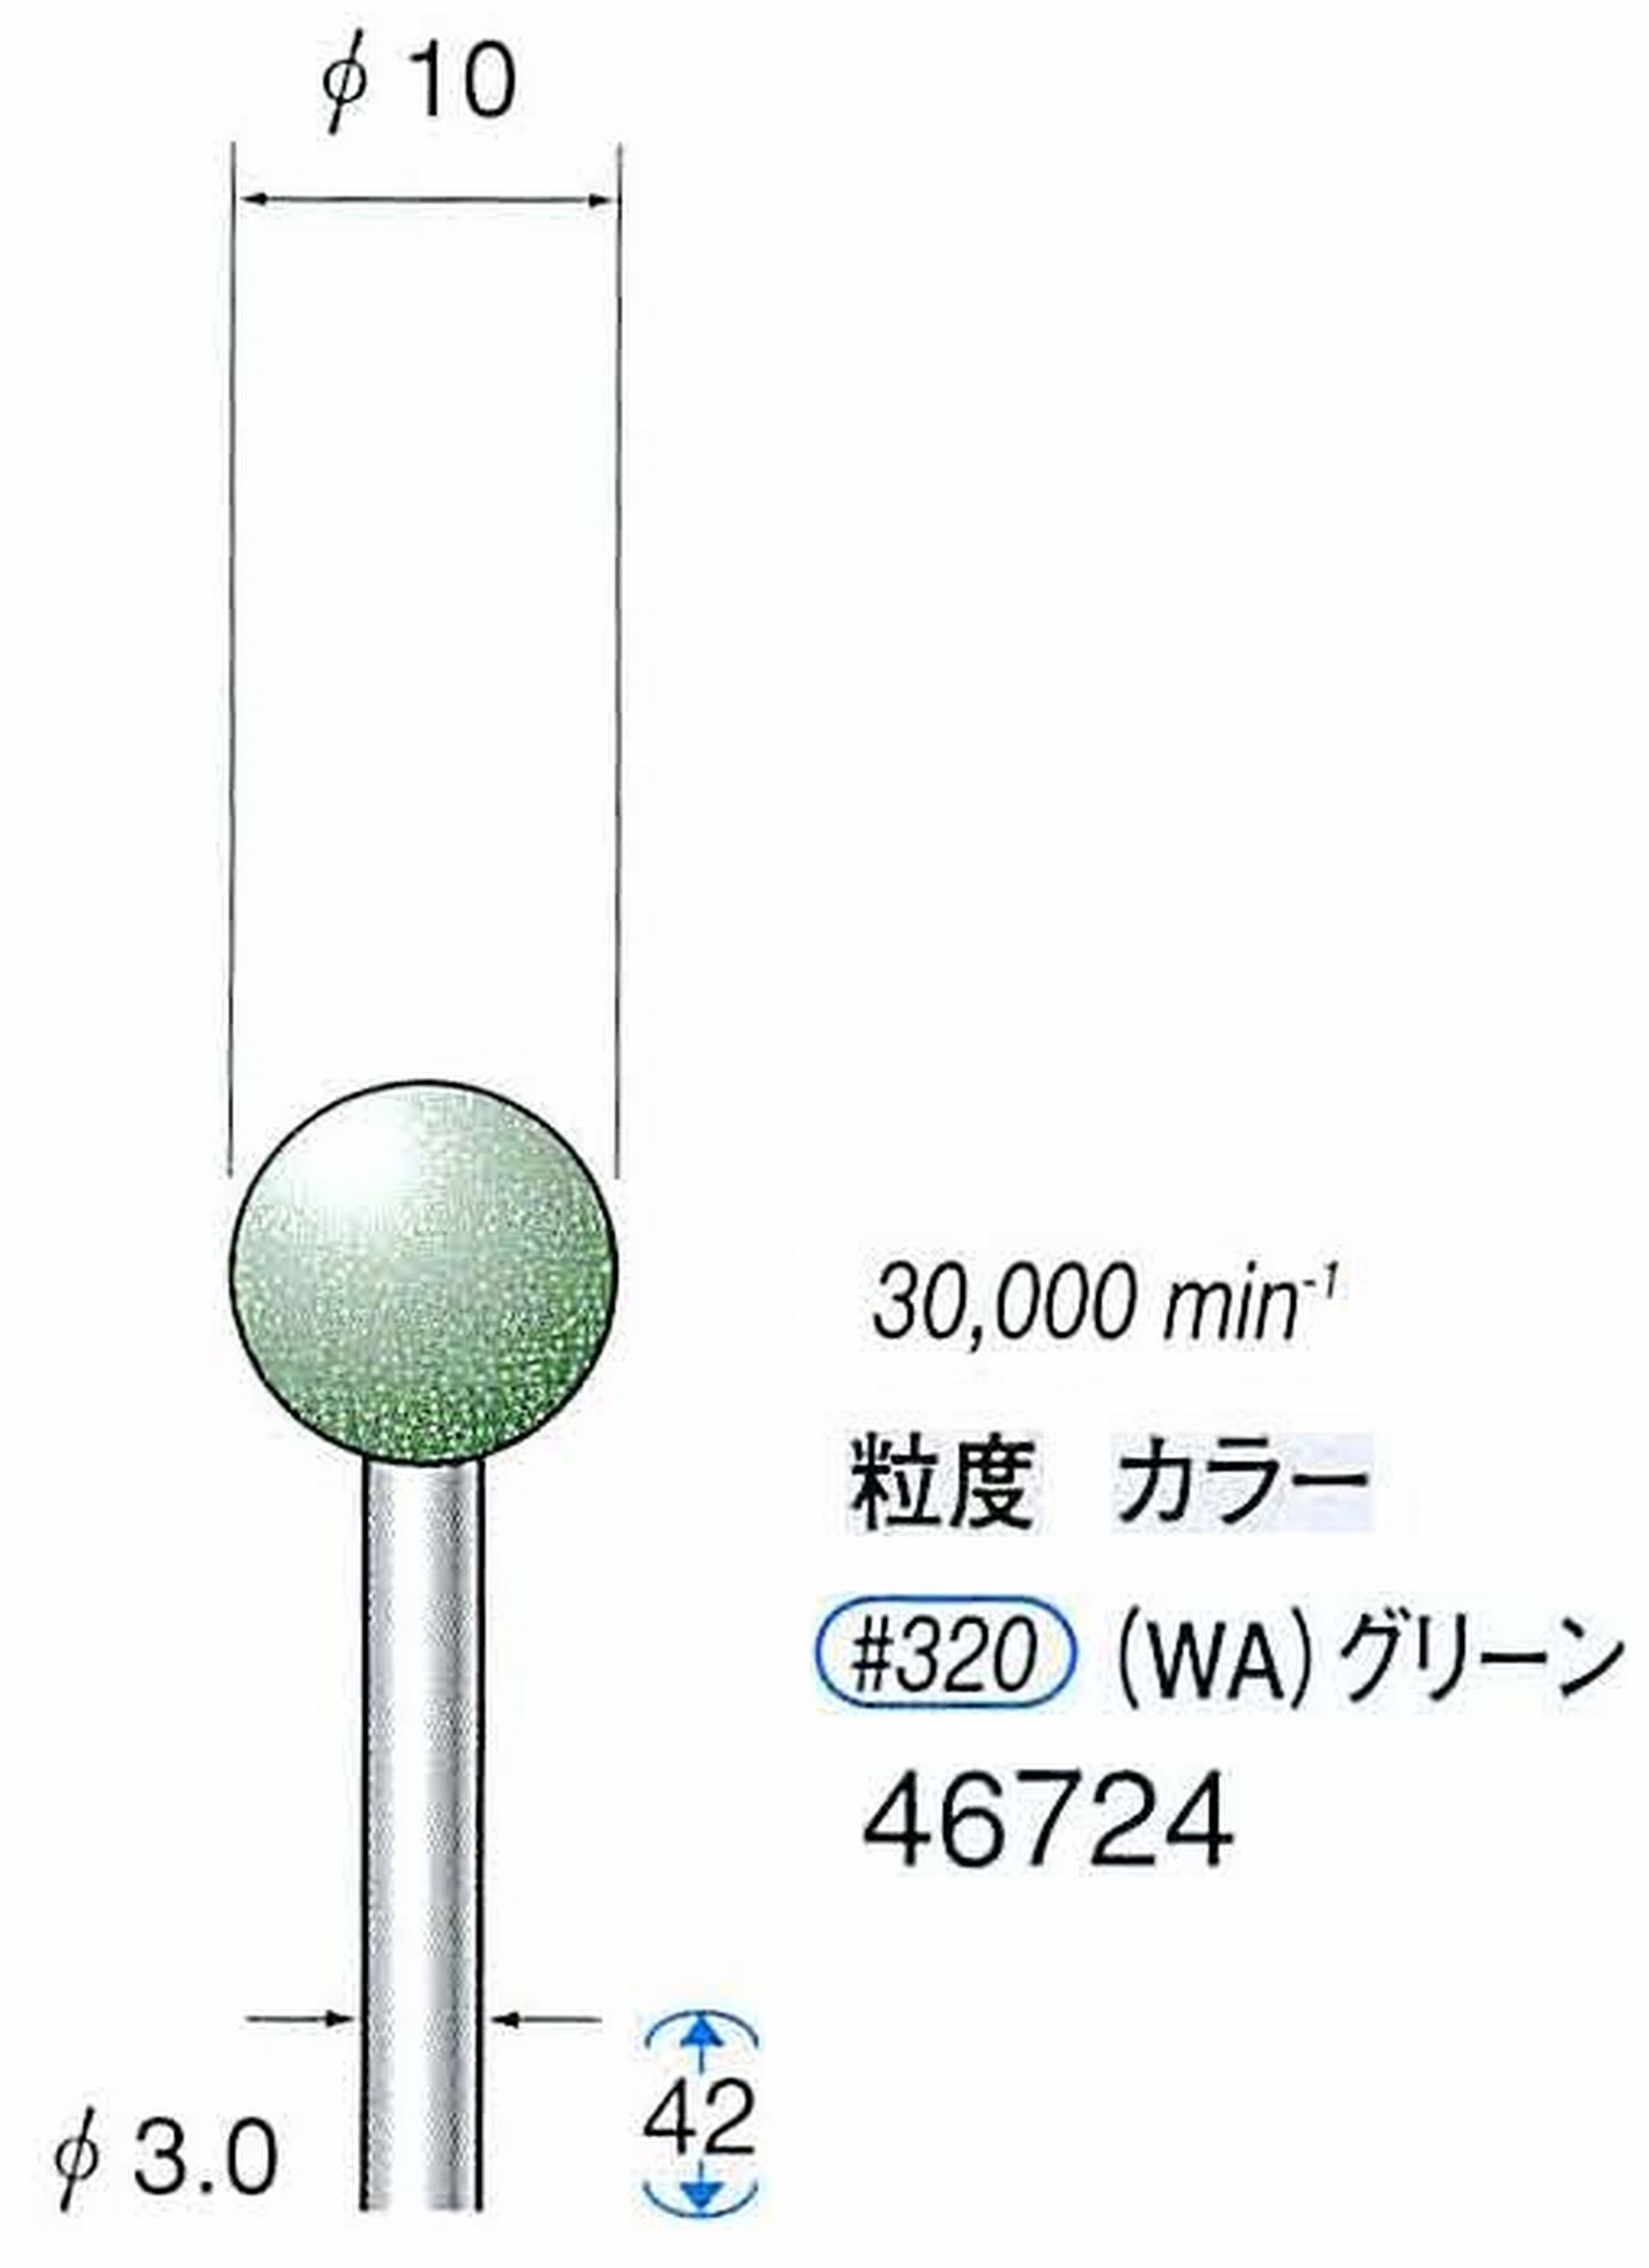 ナカニシ/NAKANISHI ゴム砥石 グリーンポリッシャー(WA砥粒)ゴム質の硬さ：ミディアム 軸径(シャンク) φ3.0mm 46724